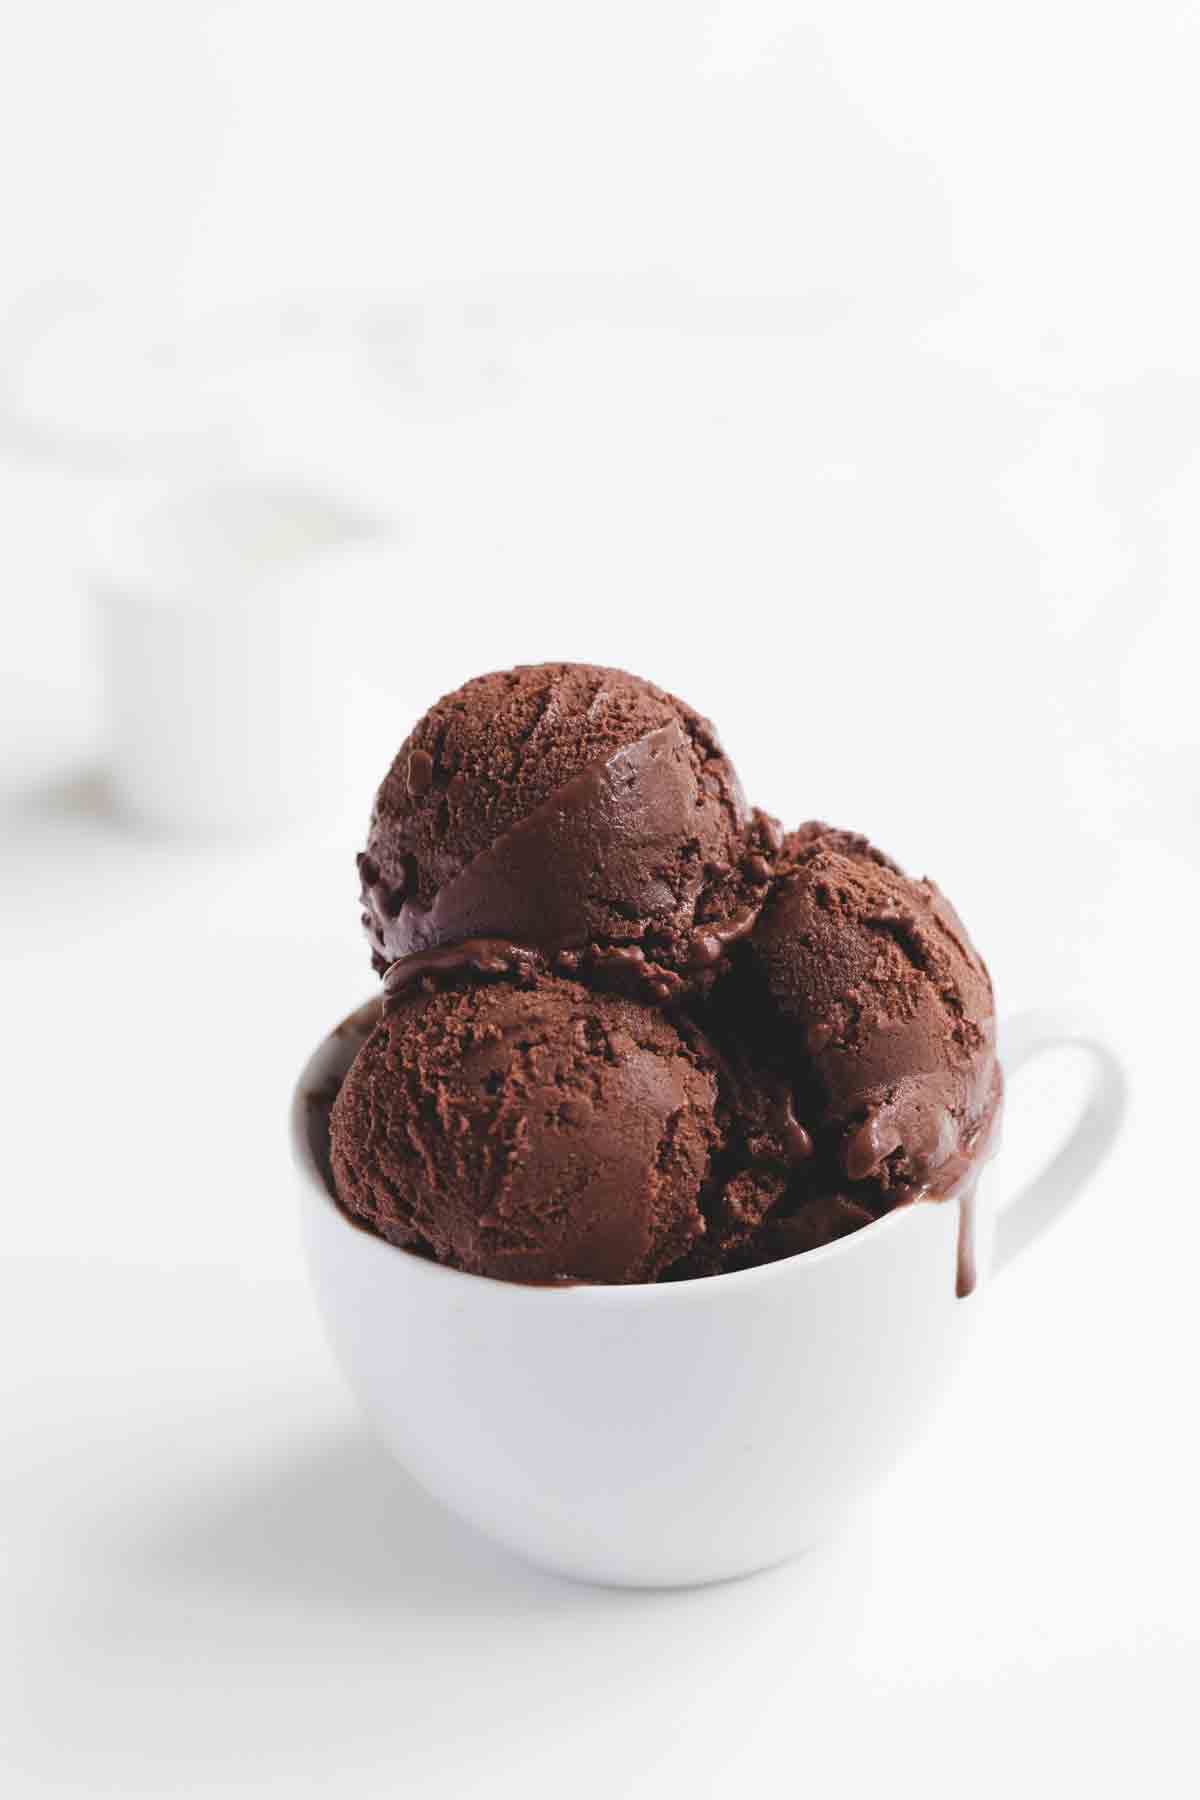 rand Aannames, aannames. Raad eens Lezen Vegan chocolade-ijs - zonder ijsmachine | ShareLoveNotSecrets.com